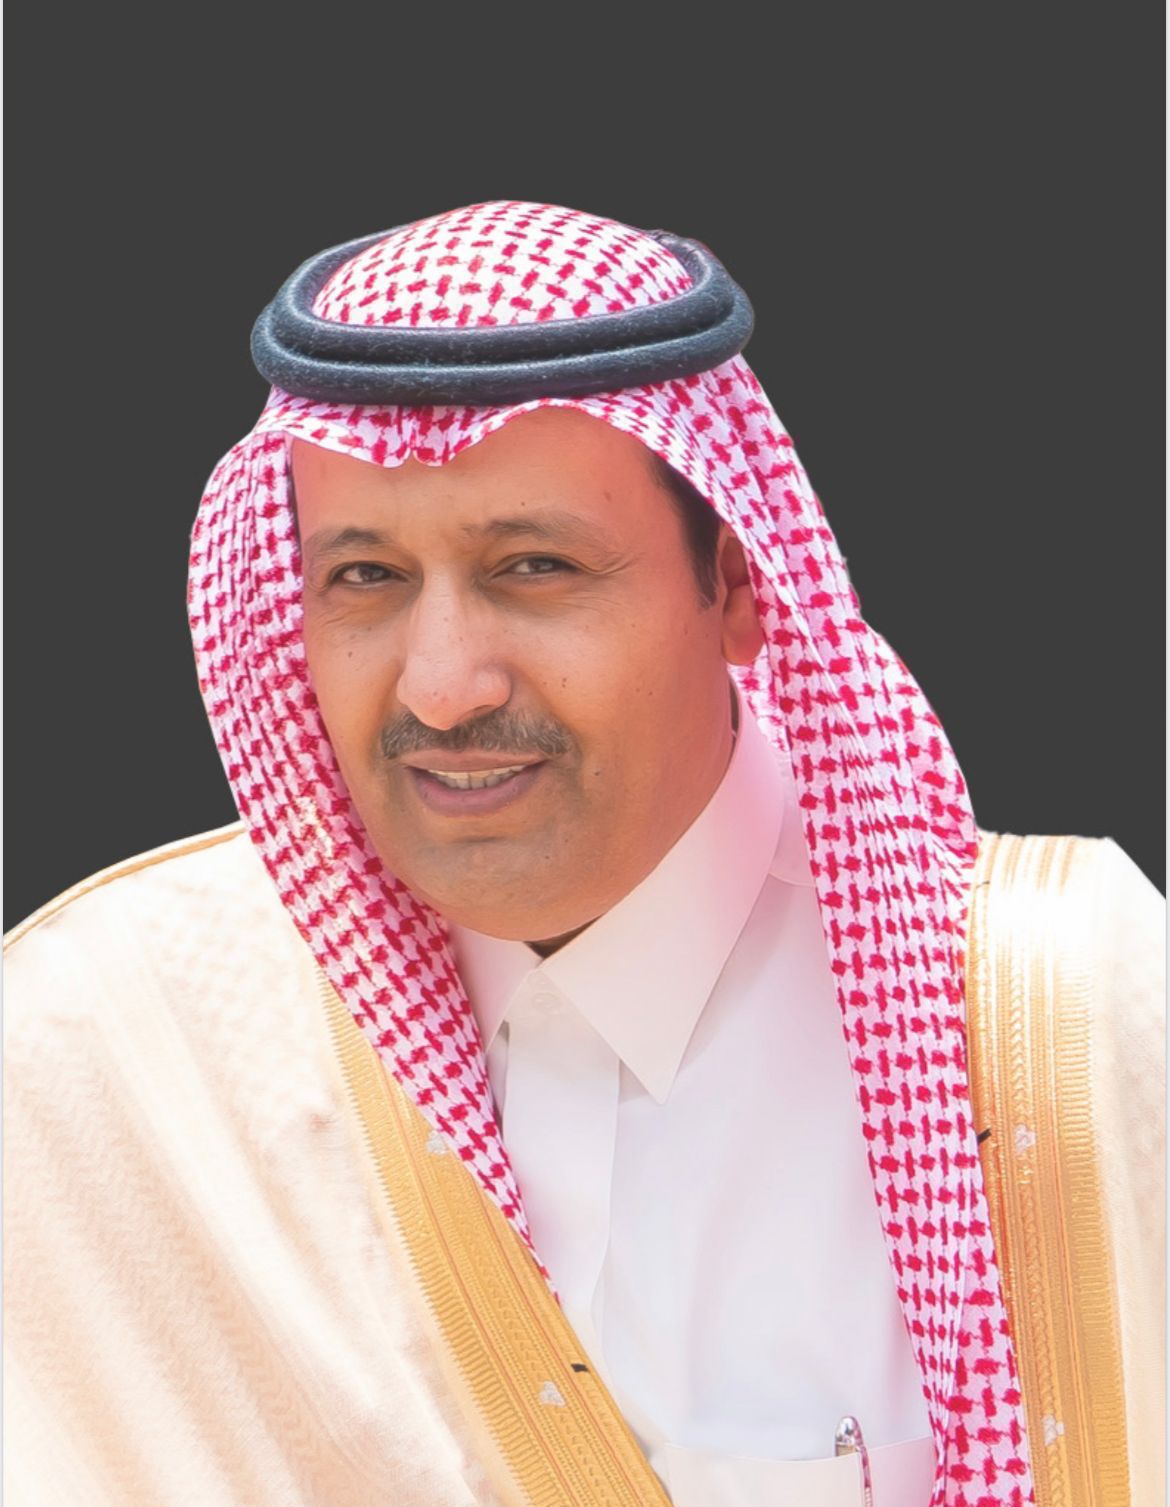 أمير منطقة الباحة :يوم التأسيس هو يوم اعتزاز بالتاريخ العريق للدولة السعودية